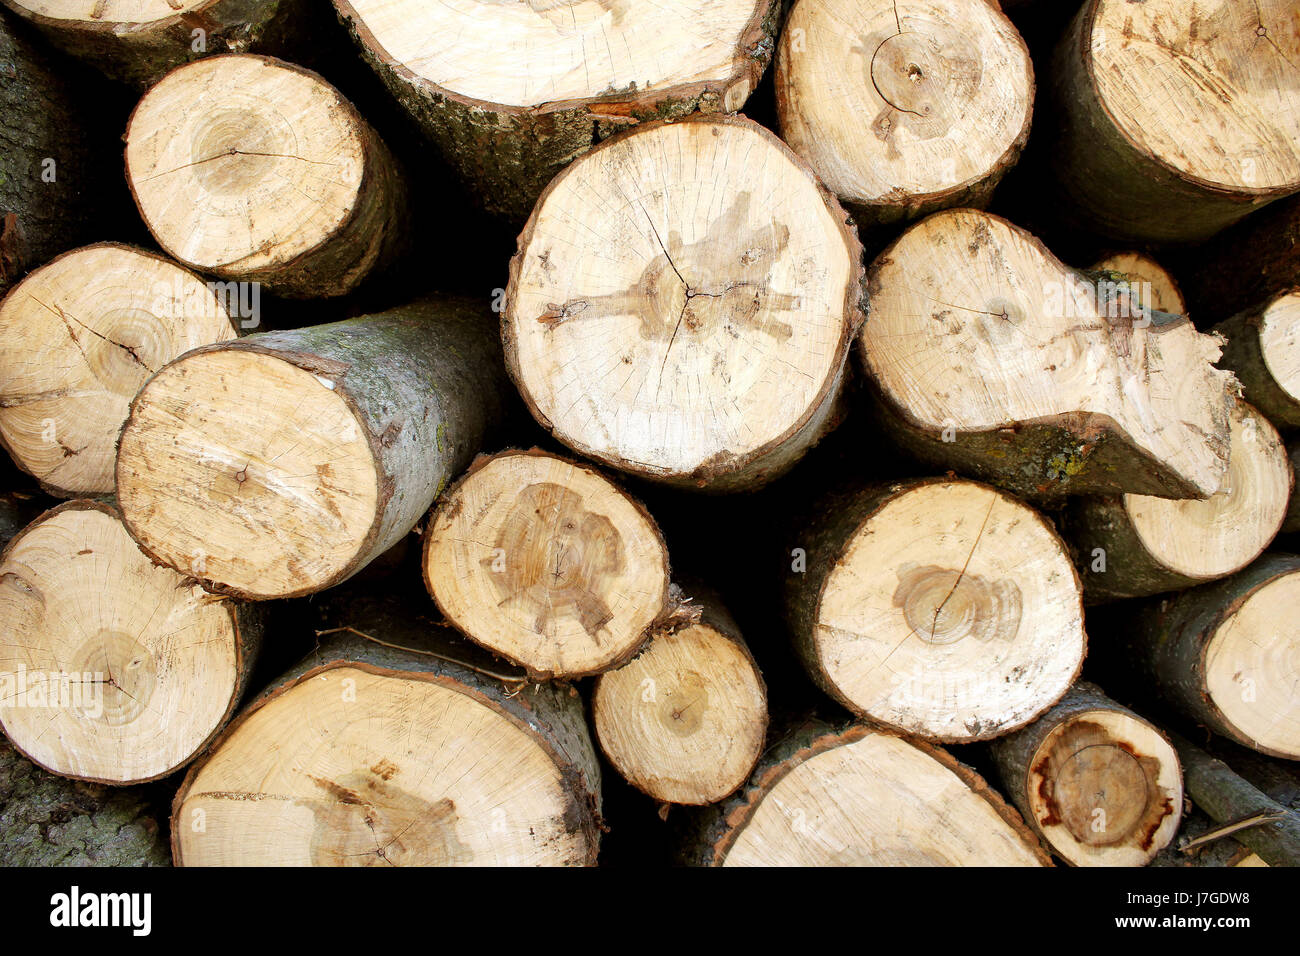 La madera de coníferas de leña de madera de grano detalle cultura bucólica marrón madera Foto de stock